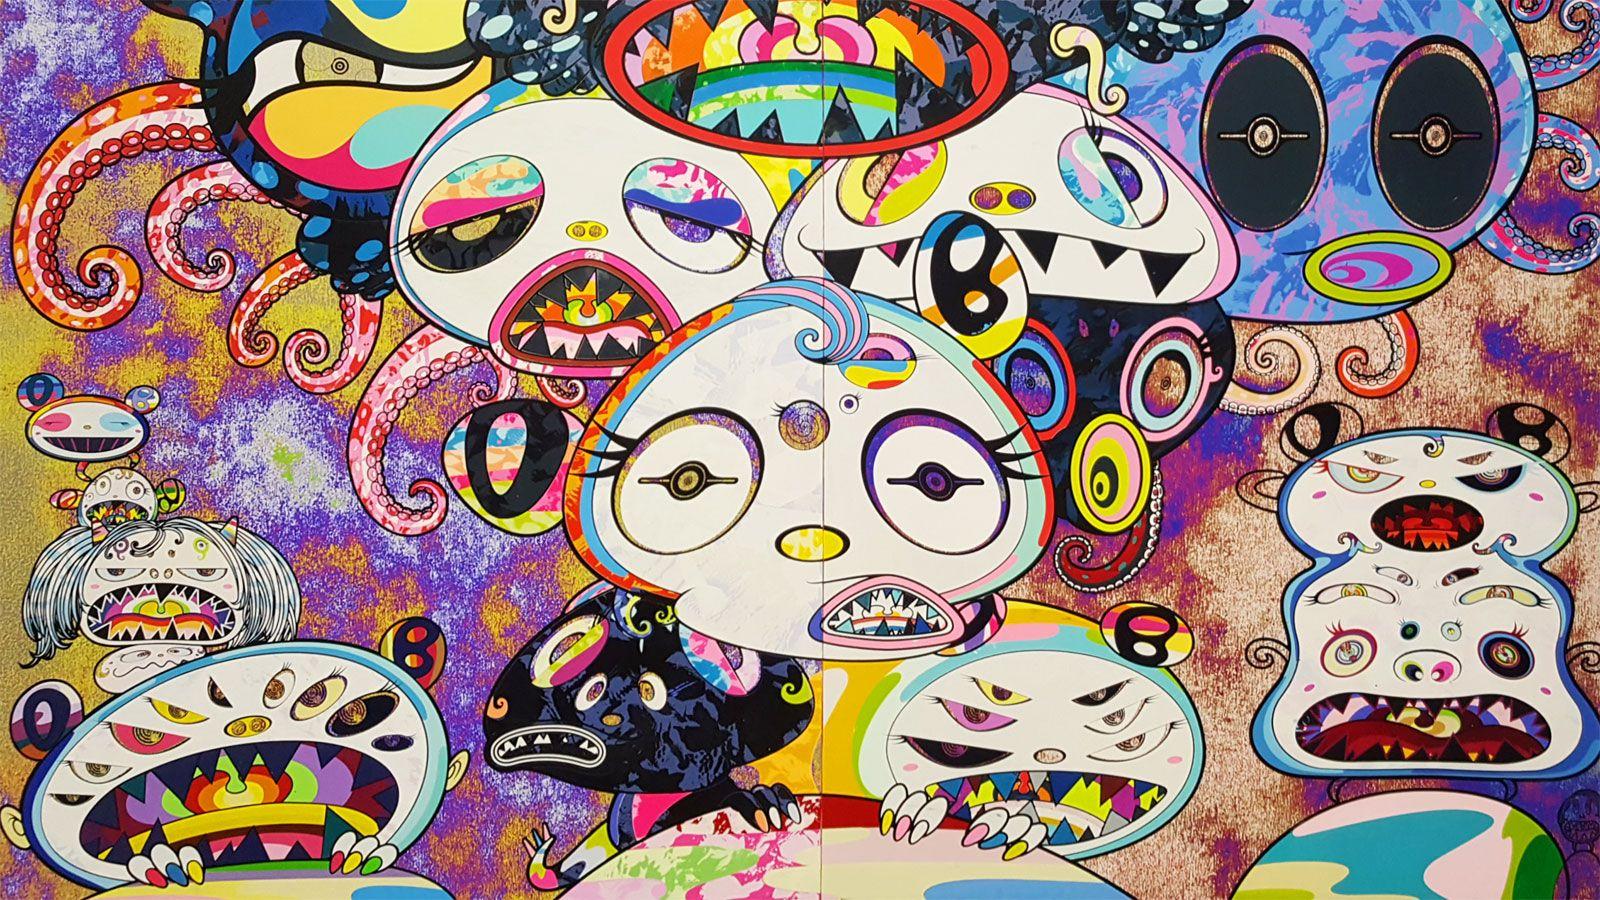 takashi murakami art wallpaper